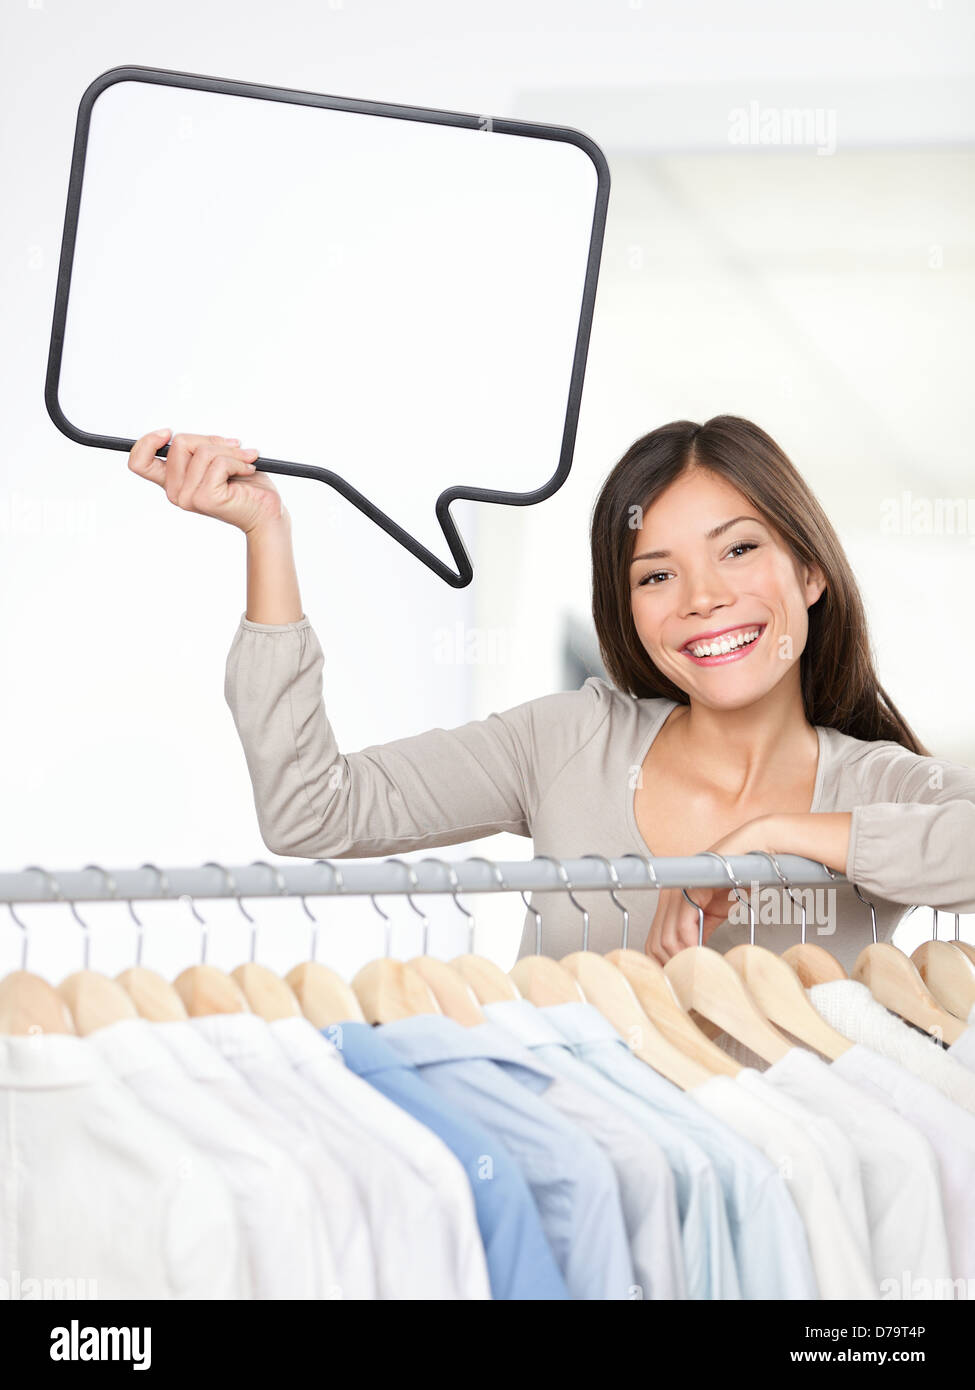 Shopping anmelden Frau in ein Bekleidungsgeschäft. Kleine Kleider Geschäft Inhaber mit Sprechblase Zeichen glücklich lächelnd hinter Wäscheständer. Schöne junge asiatische C Stockfoto